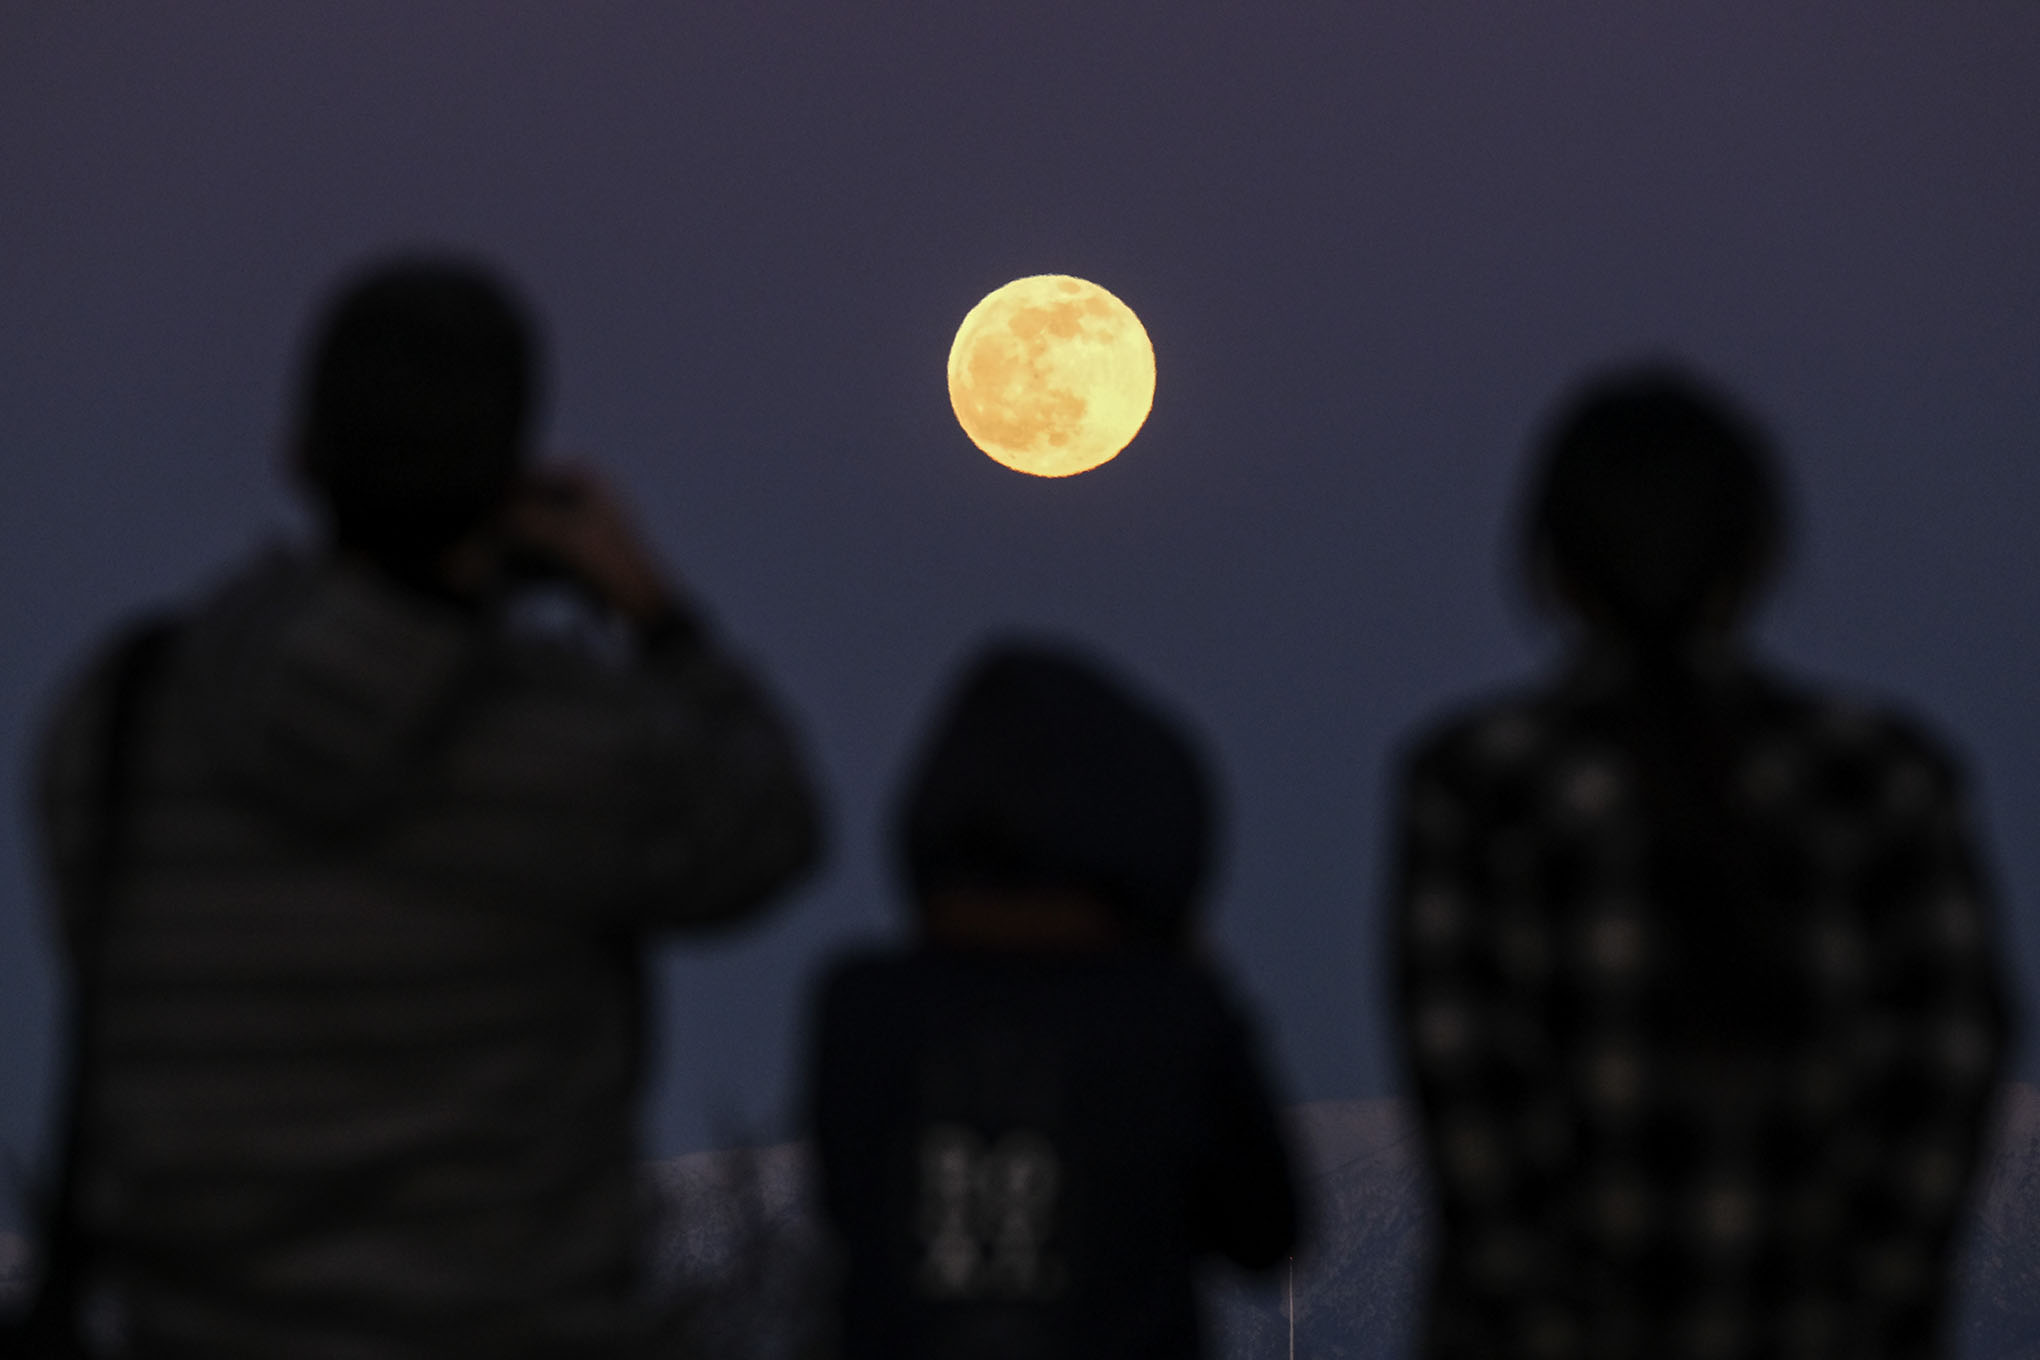 Superluna: Esta madrugada podrás fotografiar la luna llena